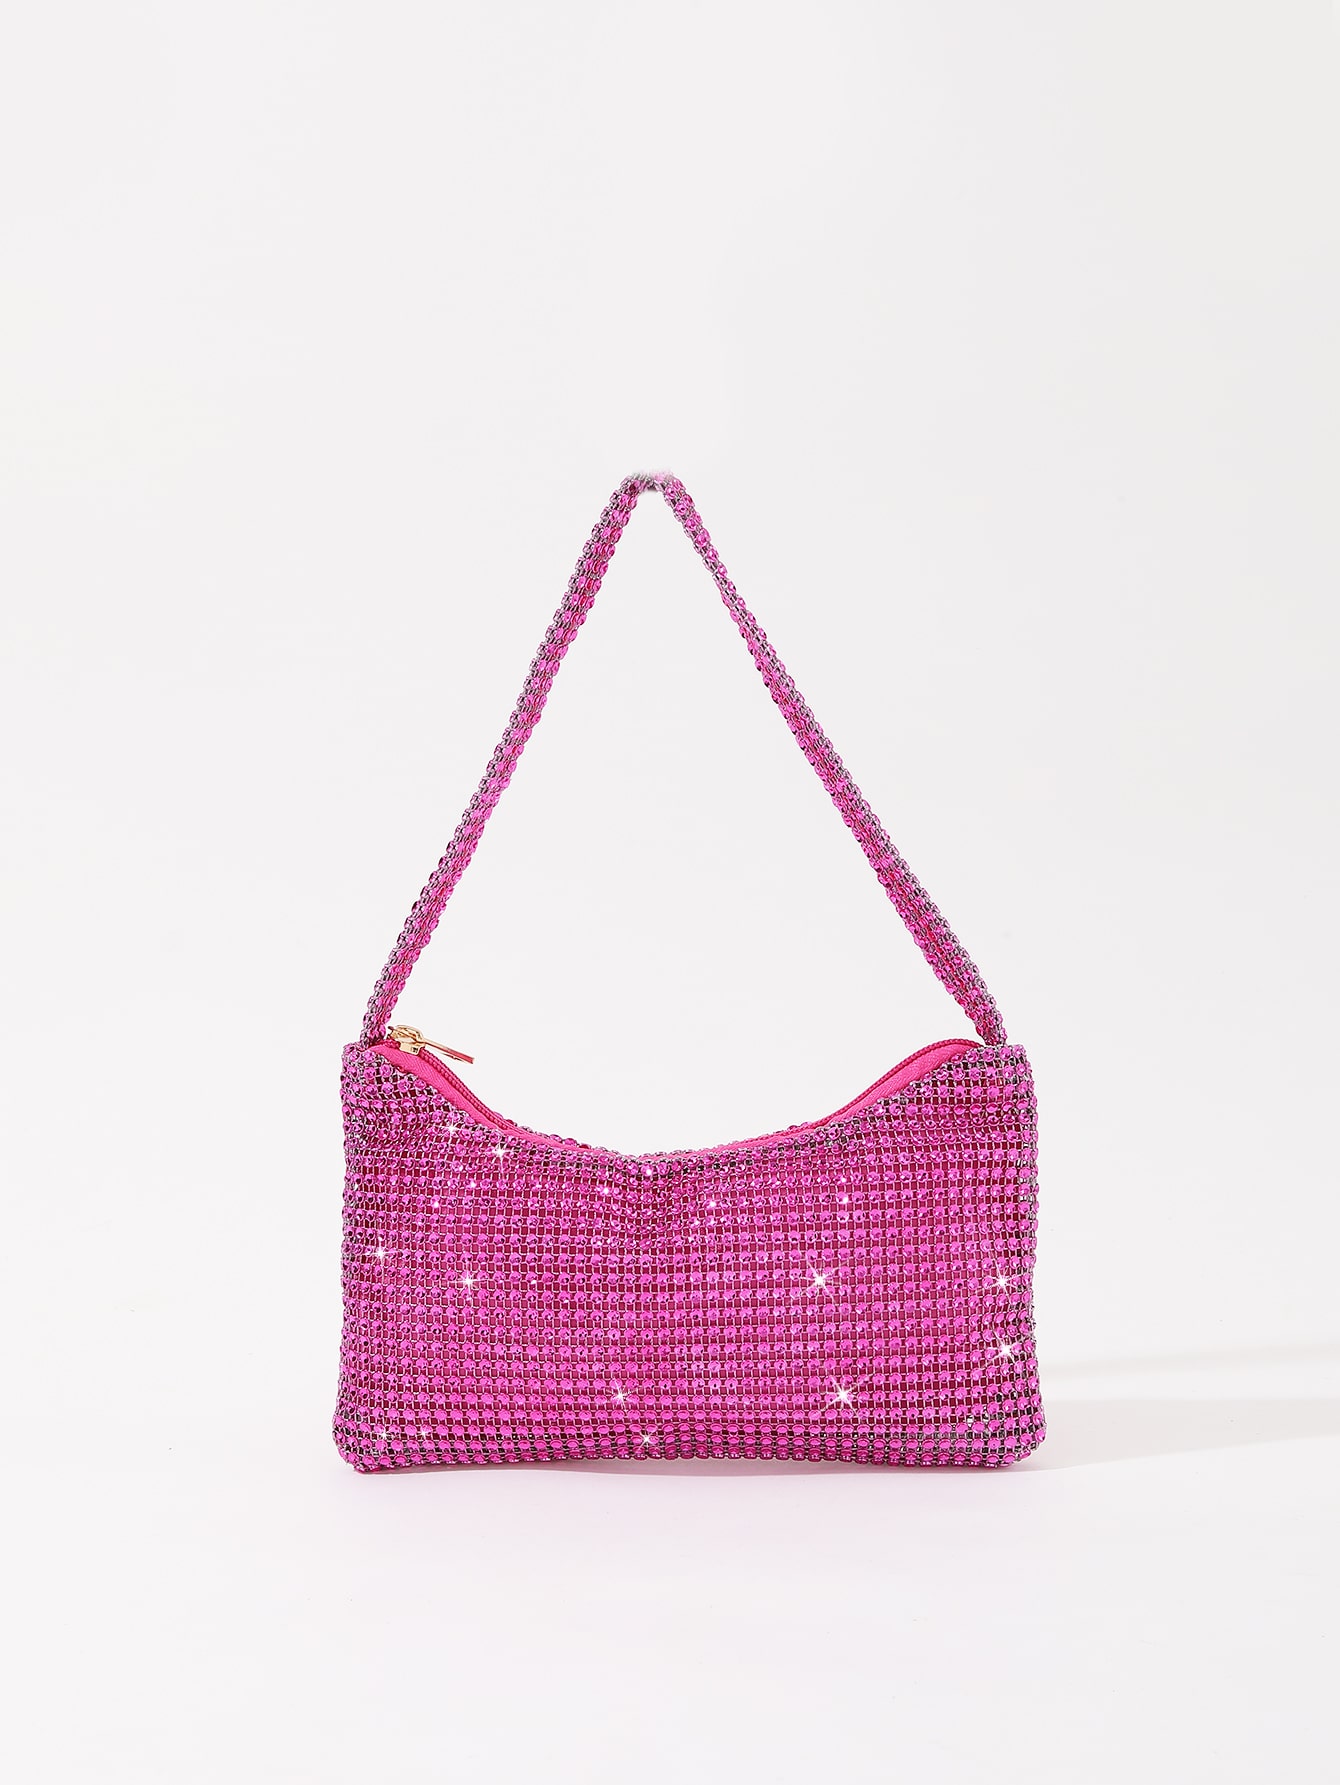 Гламурный блестящий блеск, блестки, роскошь, блестящий декор со стразами, ярко-розовый наборы для творчества гламурная сумочка